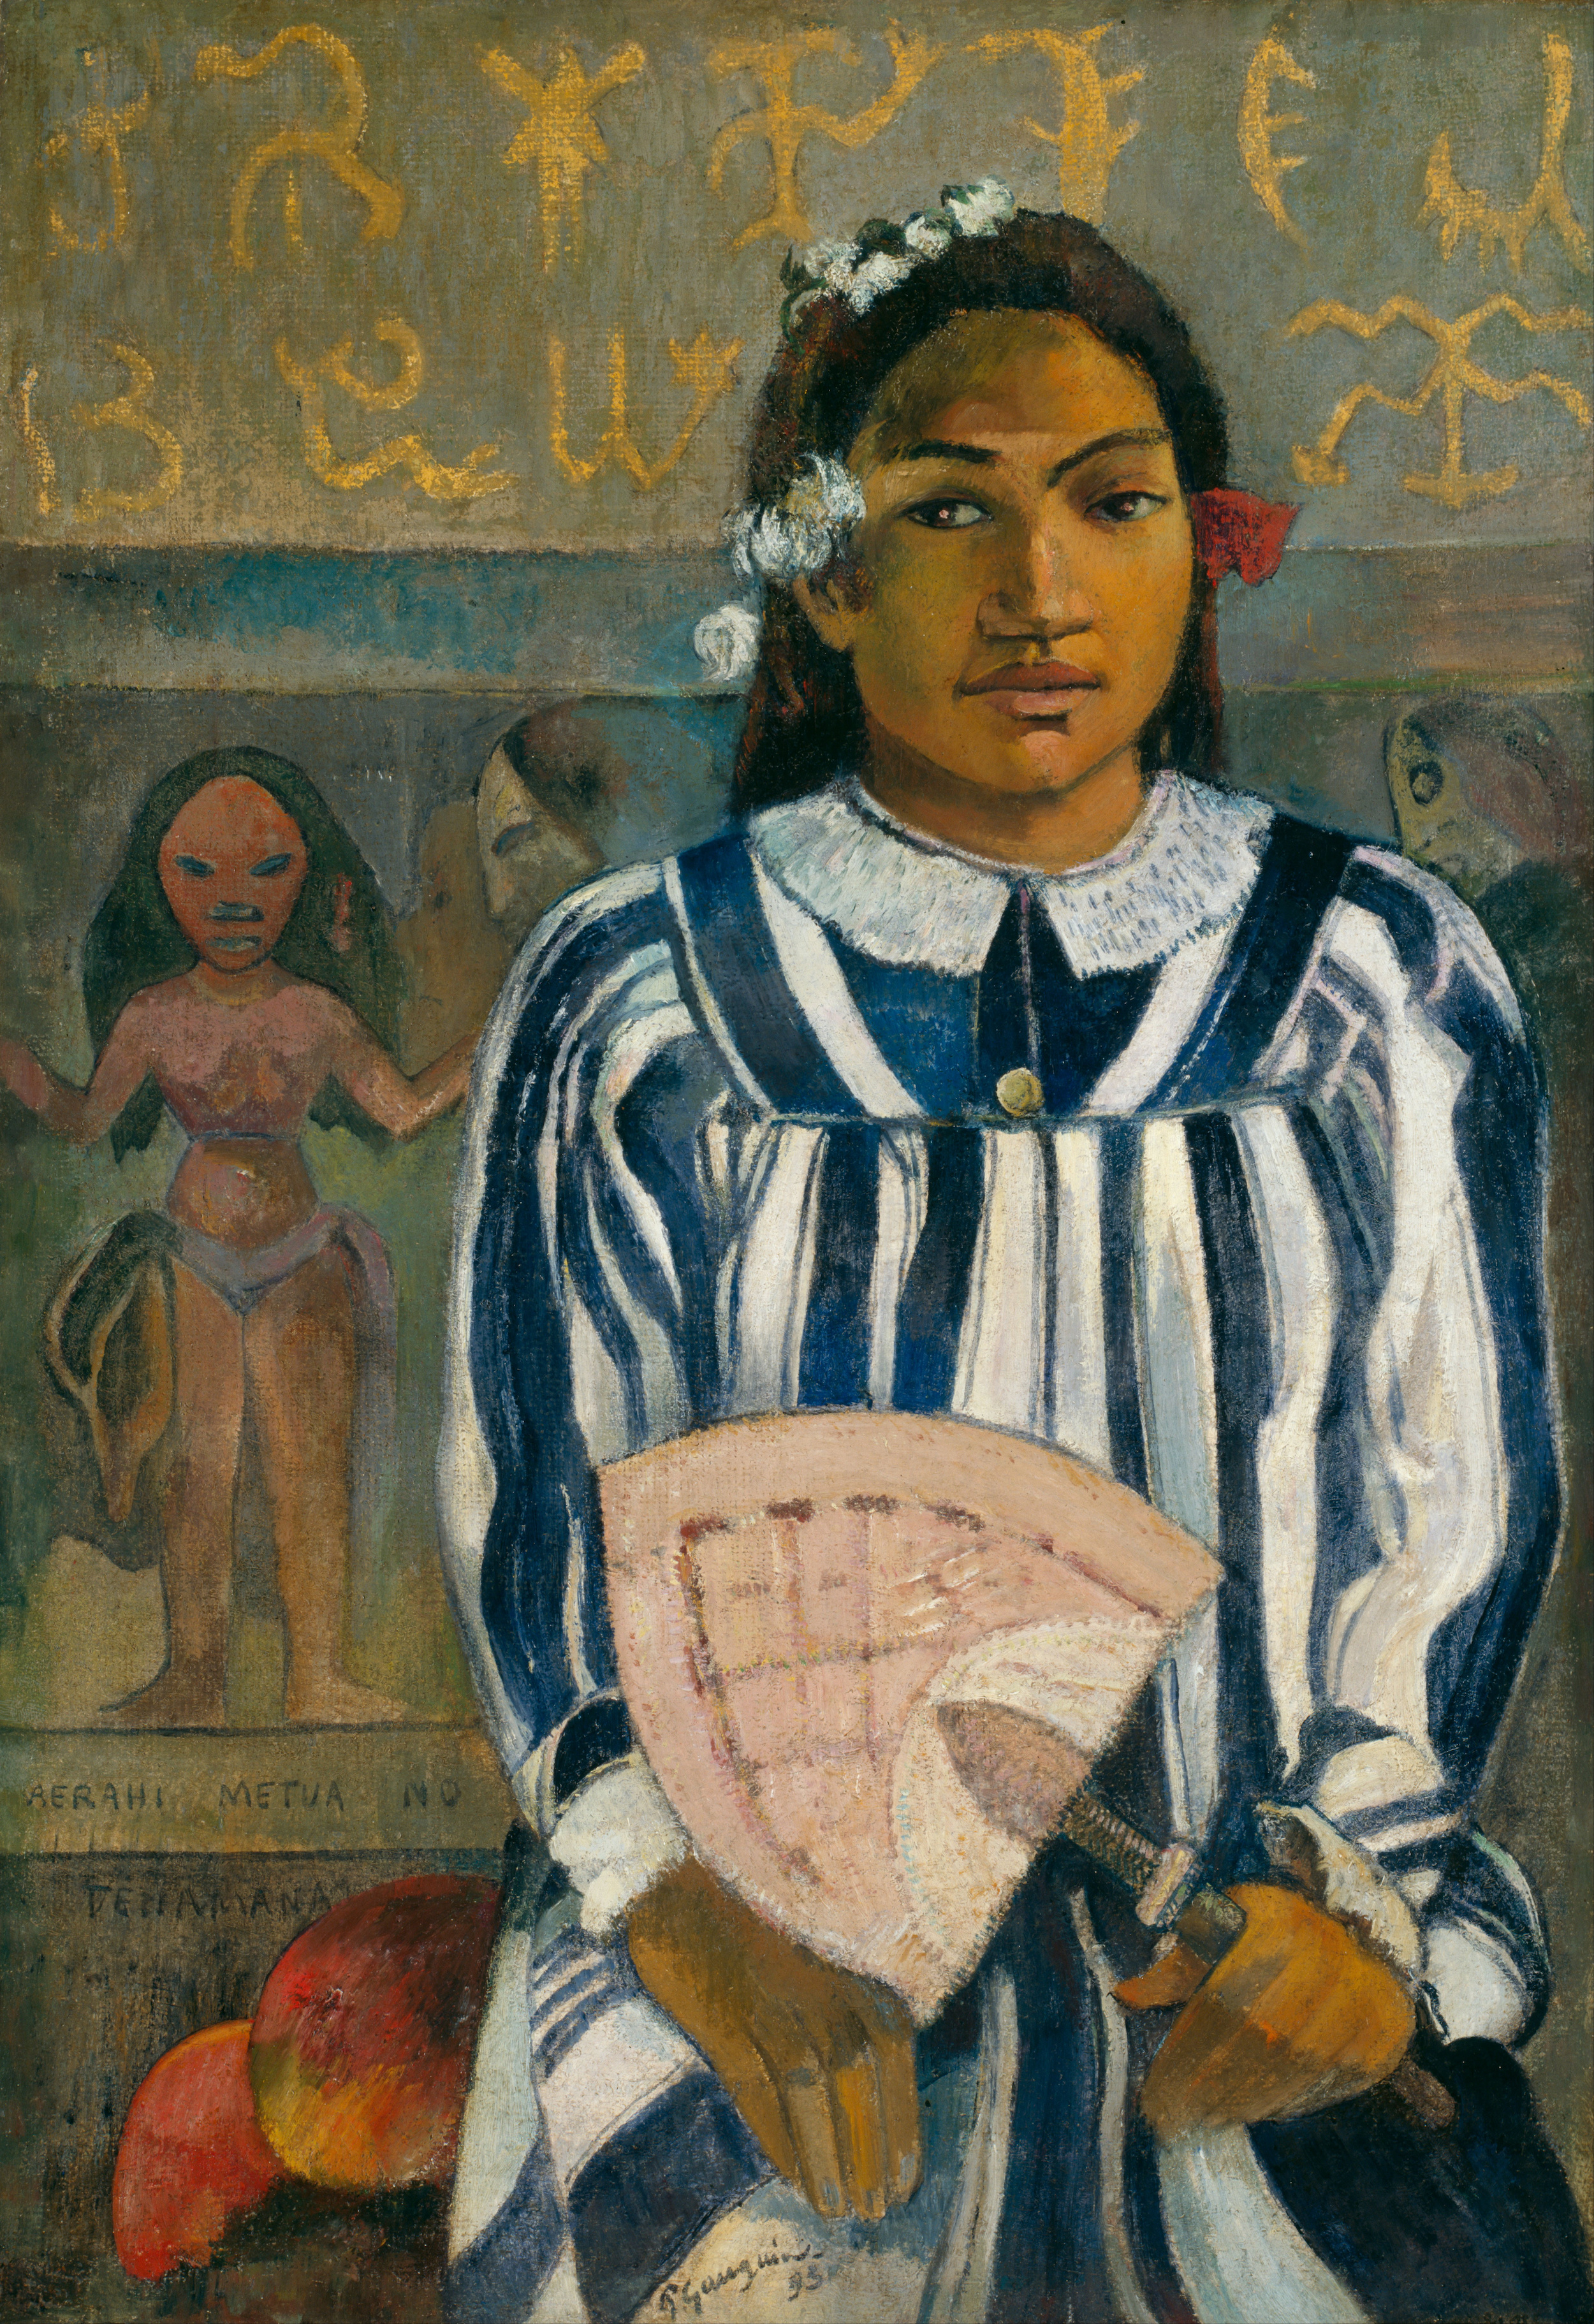 メラヒ・メトゥア・ノ・テハーマナ by Paul Gauguin - 1893年 - 76.3 × 54.3 cm 